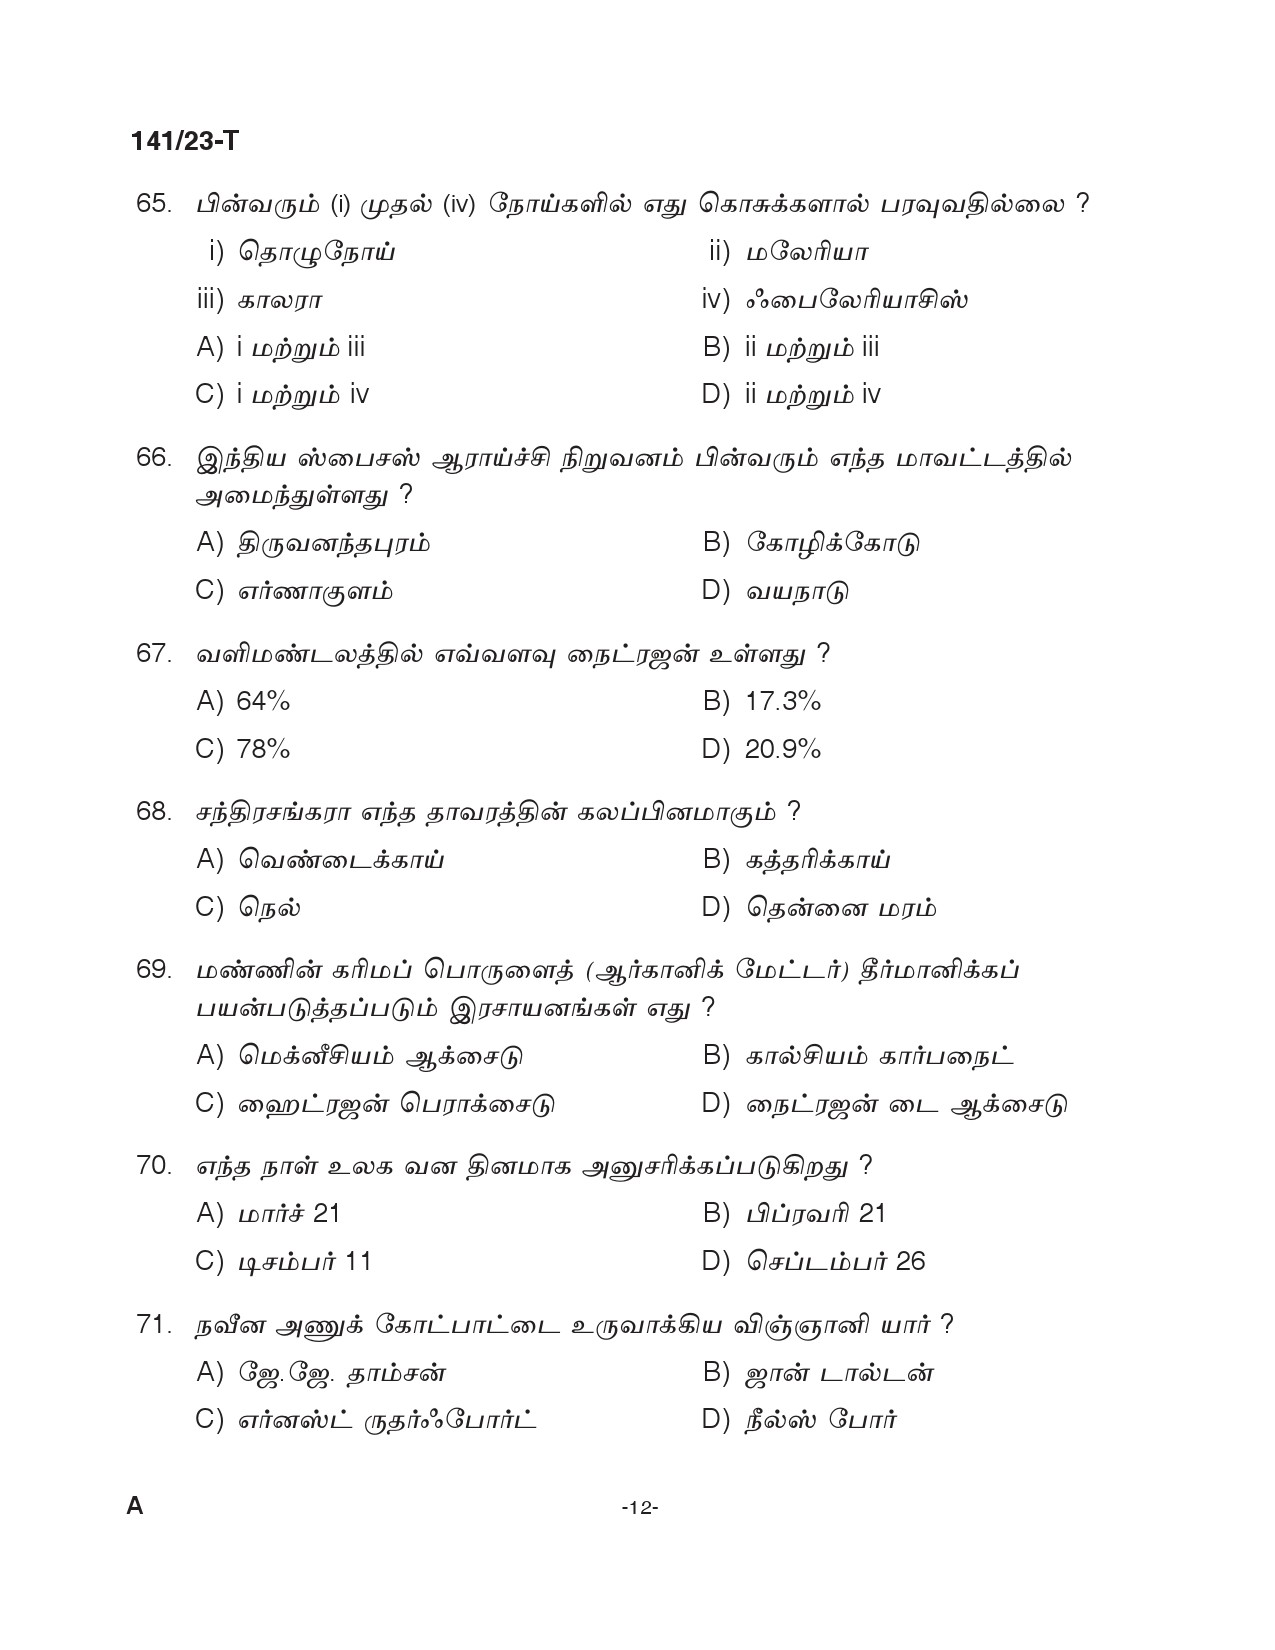 KPSC LGS Tamil Exam 2023 Code 1412023 T 11